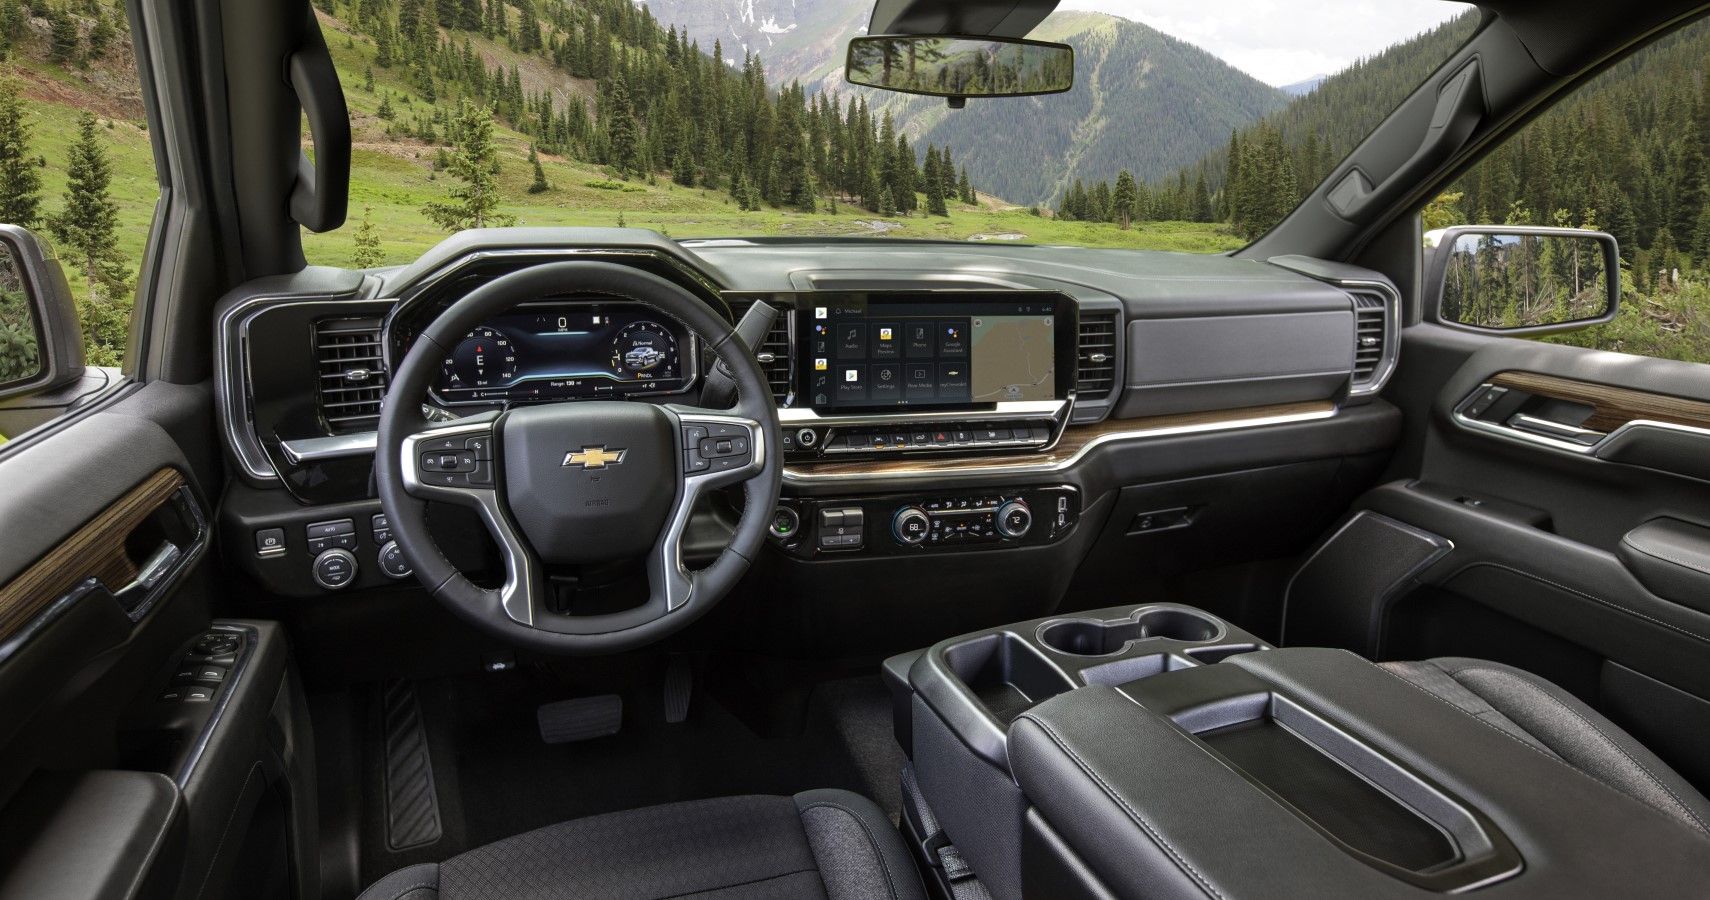 2022 Chevrolet Silverado 1500 interior layout view